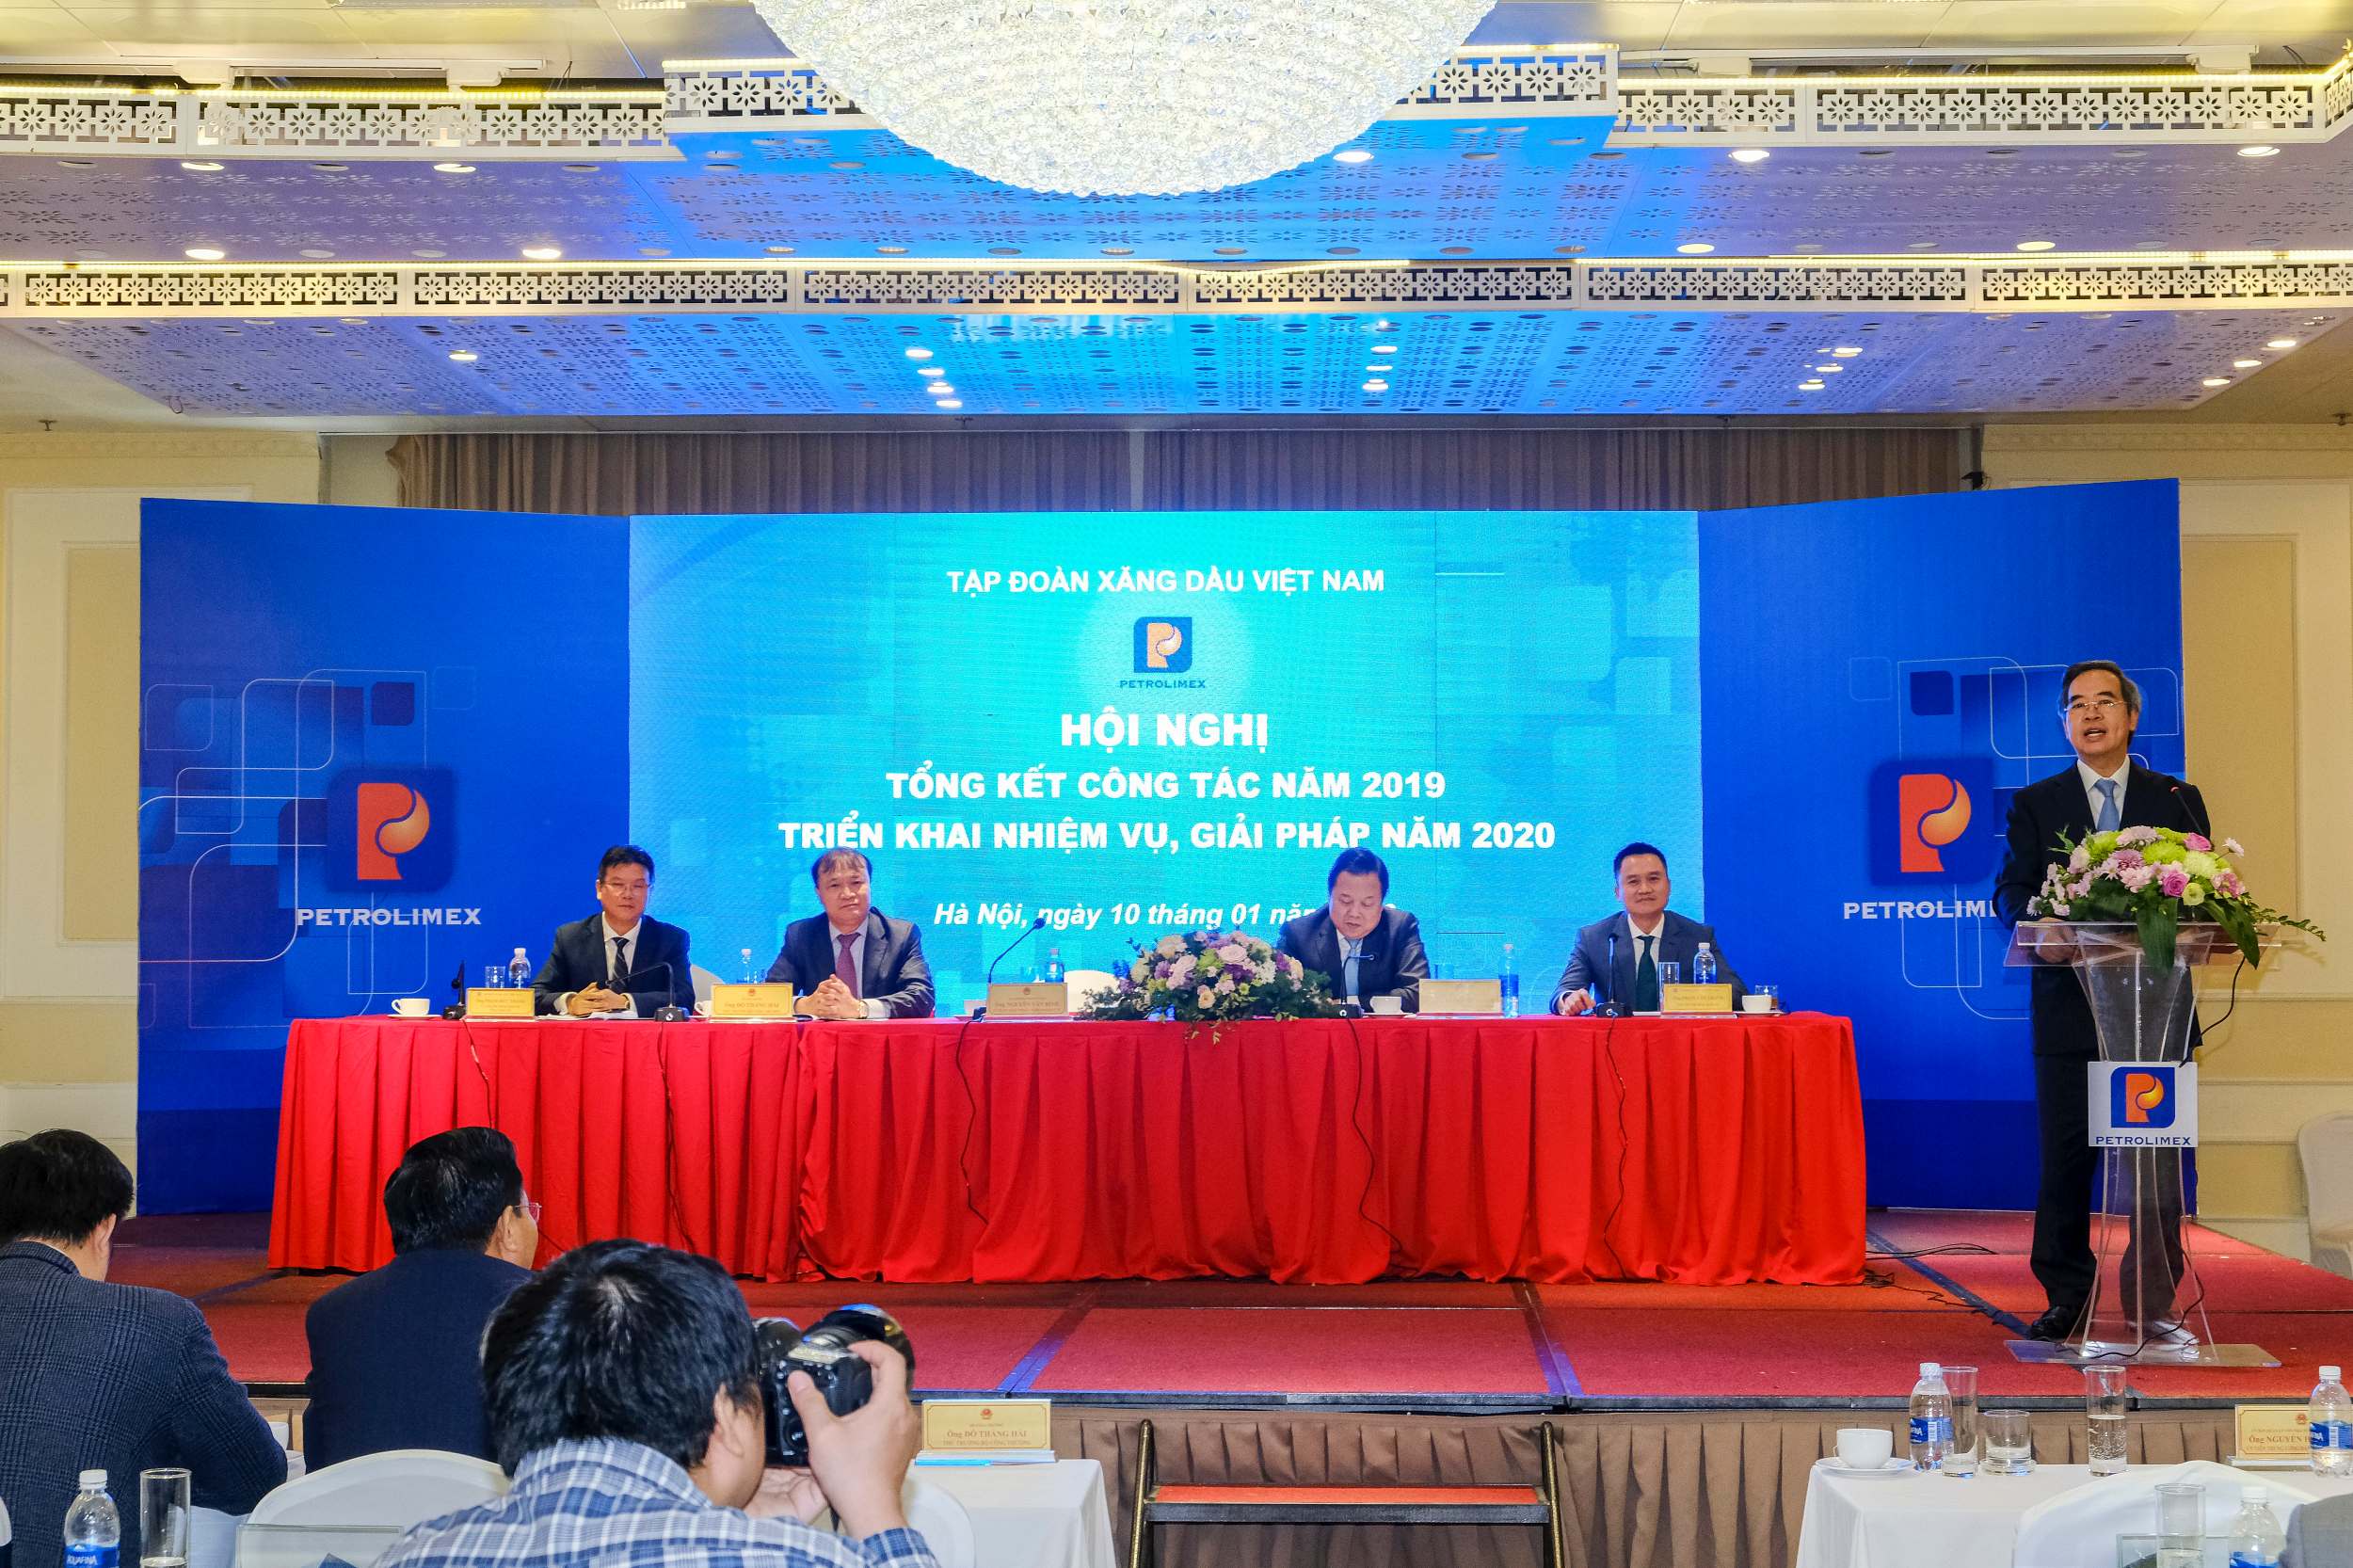 Trưởng ban Kinh tế trung ương Nguyễn Văn Bình đưa ra một số lưu ý cho Petrolimex trong năm 2020